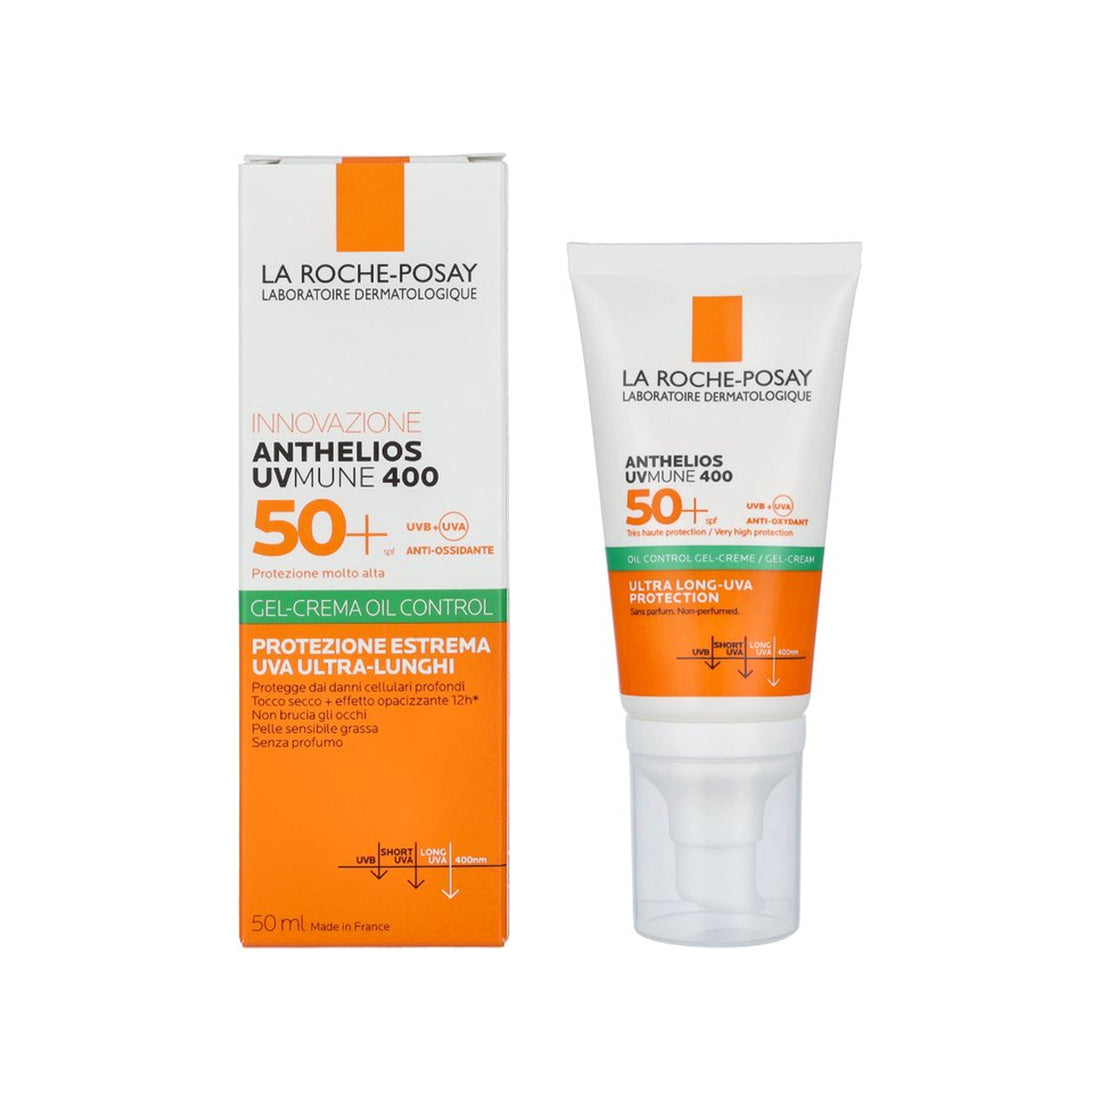 La Roche-Posay Anthelios UVMune 400 Oil Control Gel Cream Non-Perfumed SPF50+ 50ml